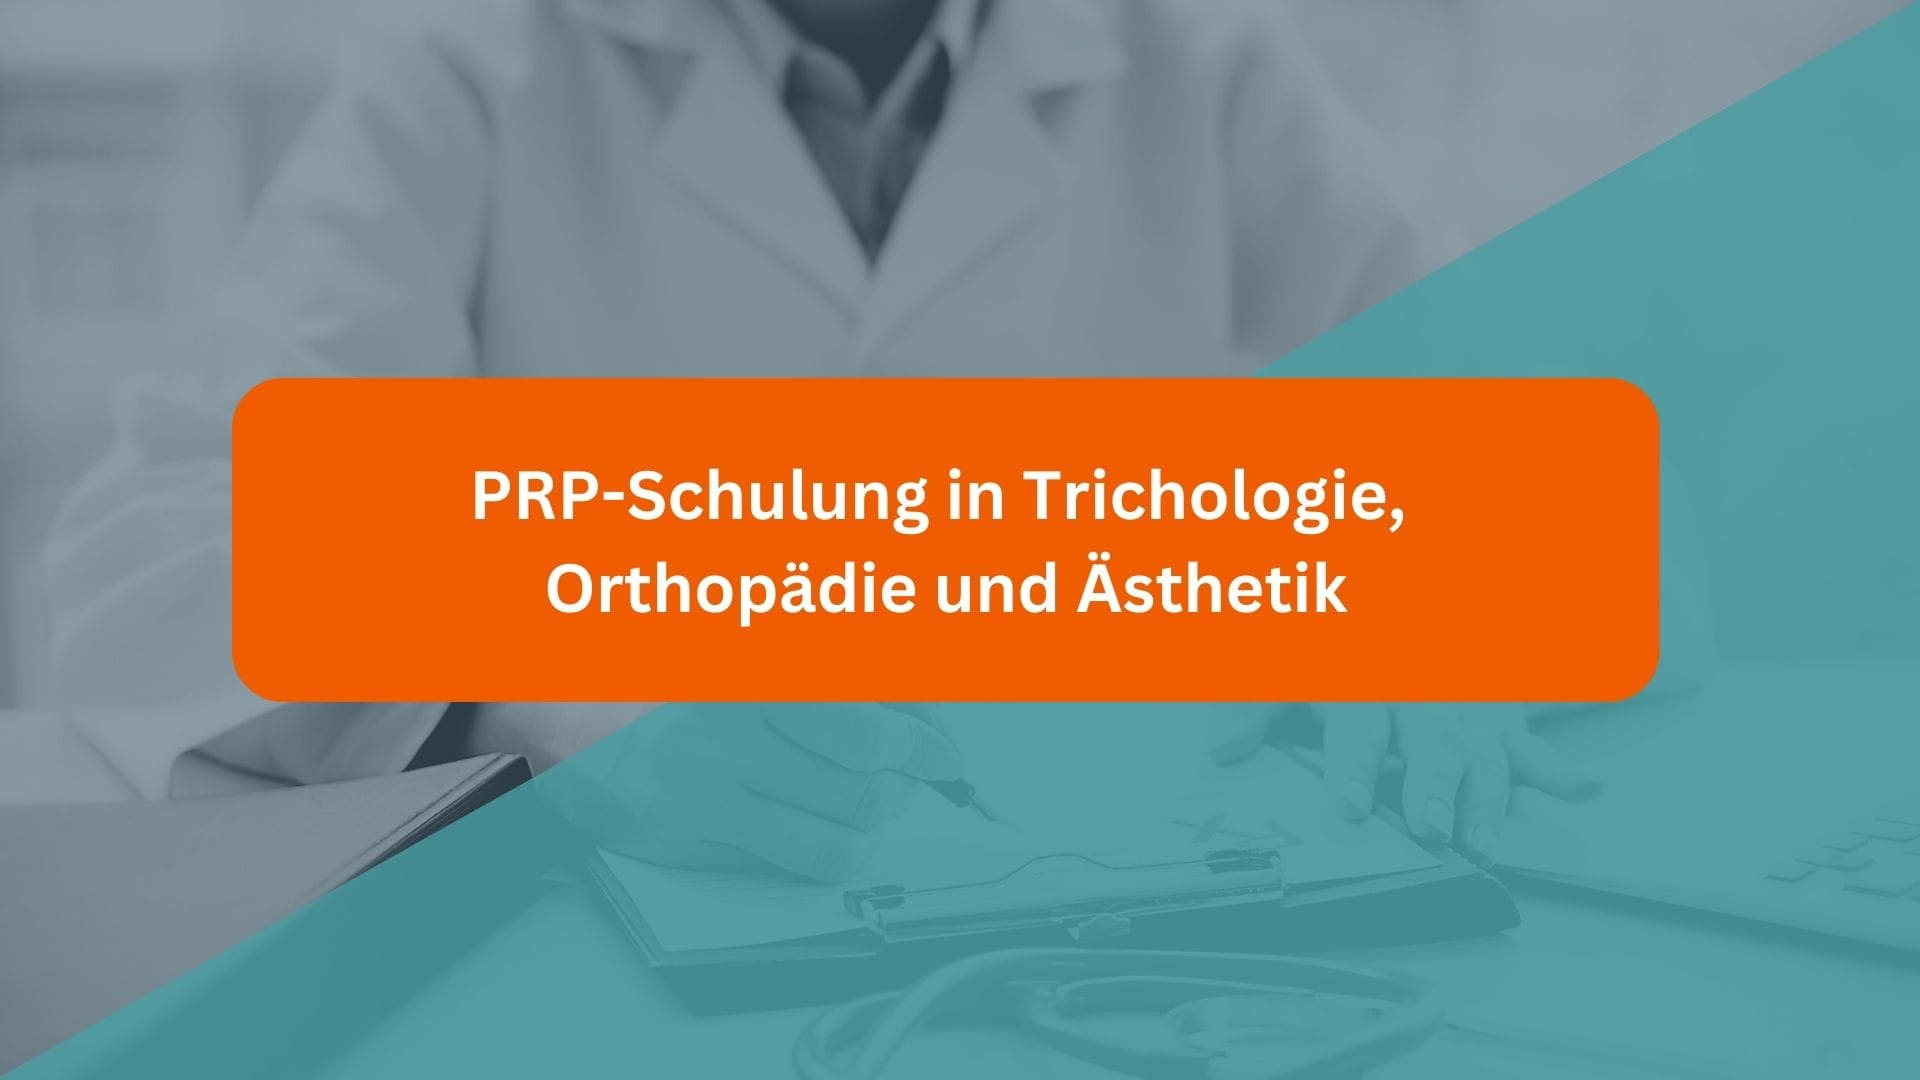 SSS - Trikoloji, ortopedi ve estetik alanlarında PRP eğitimi